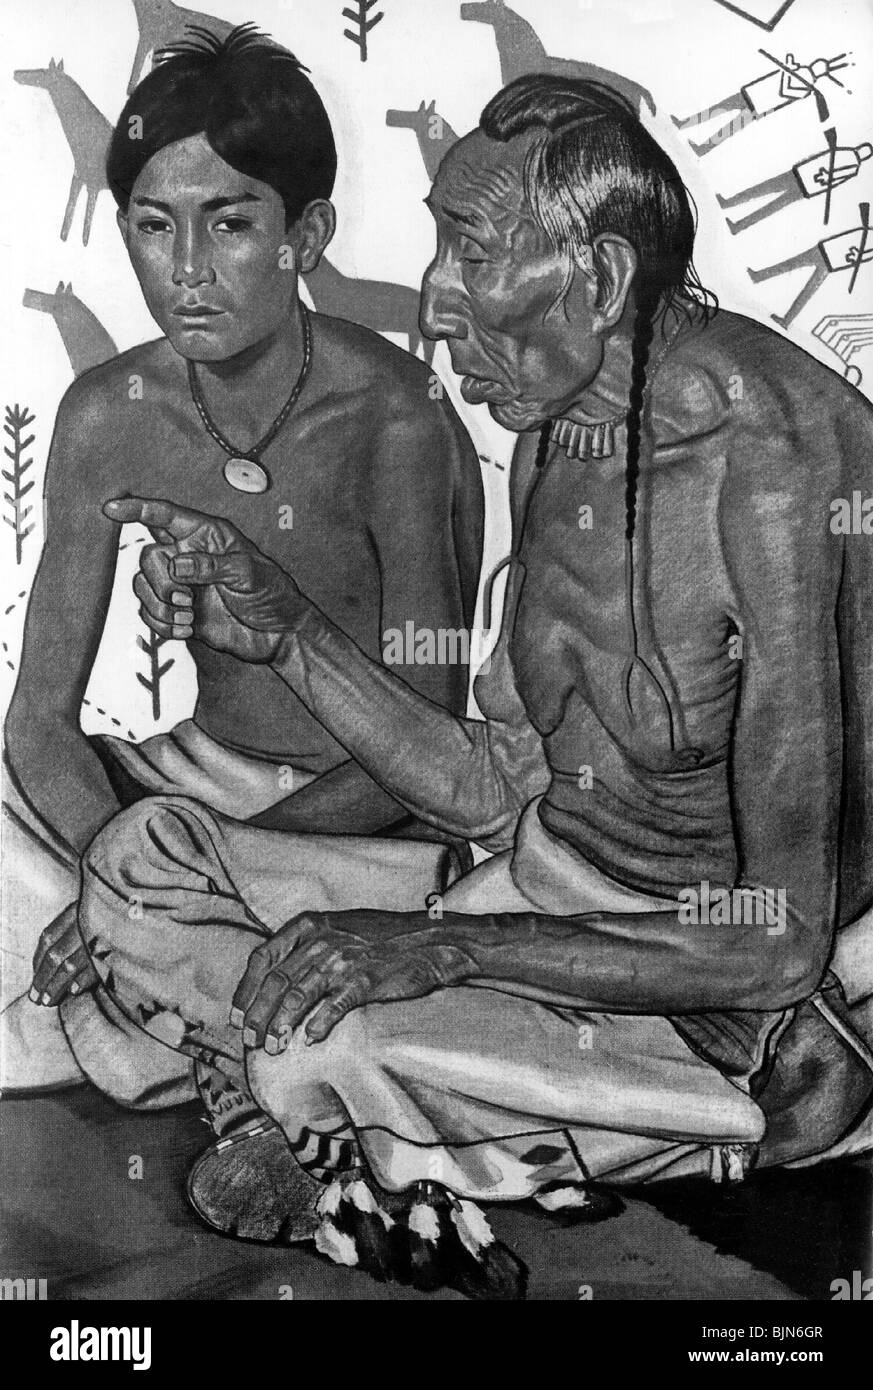 Géographie / Voyage, Etats-Unis d'Amérique, les Indiens américains, l'ancêtre enseigne le petit-fils, peinture à l'huile après la nature de la réserve de l'Indien Blackfoot par W. Reiss, vers 1930, Banque D'Images